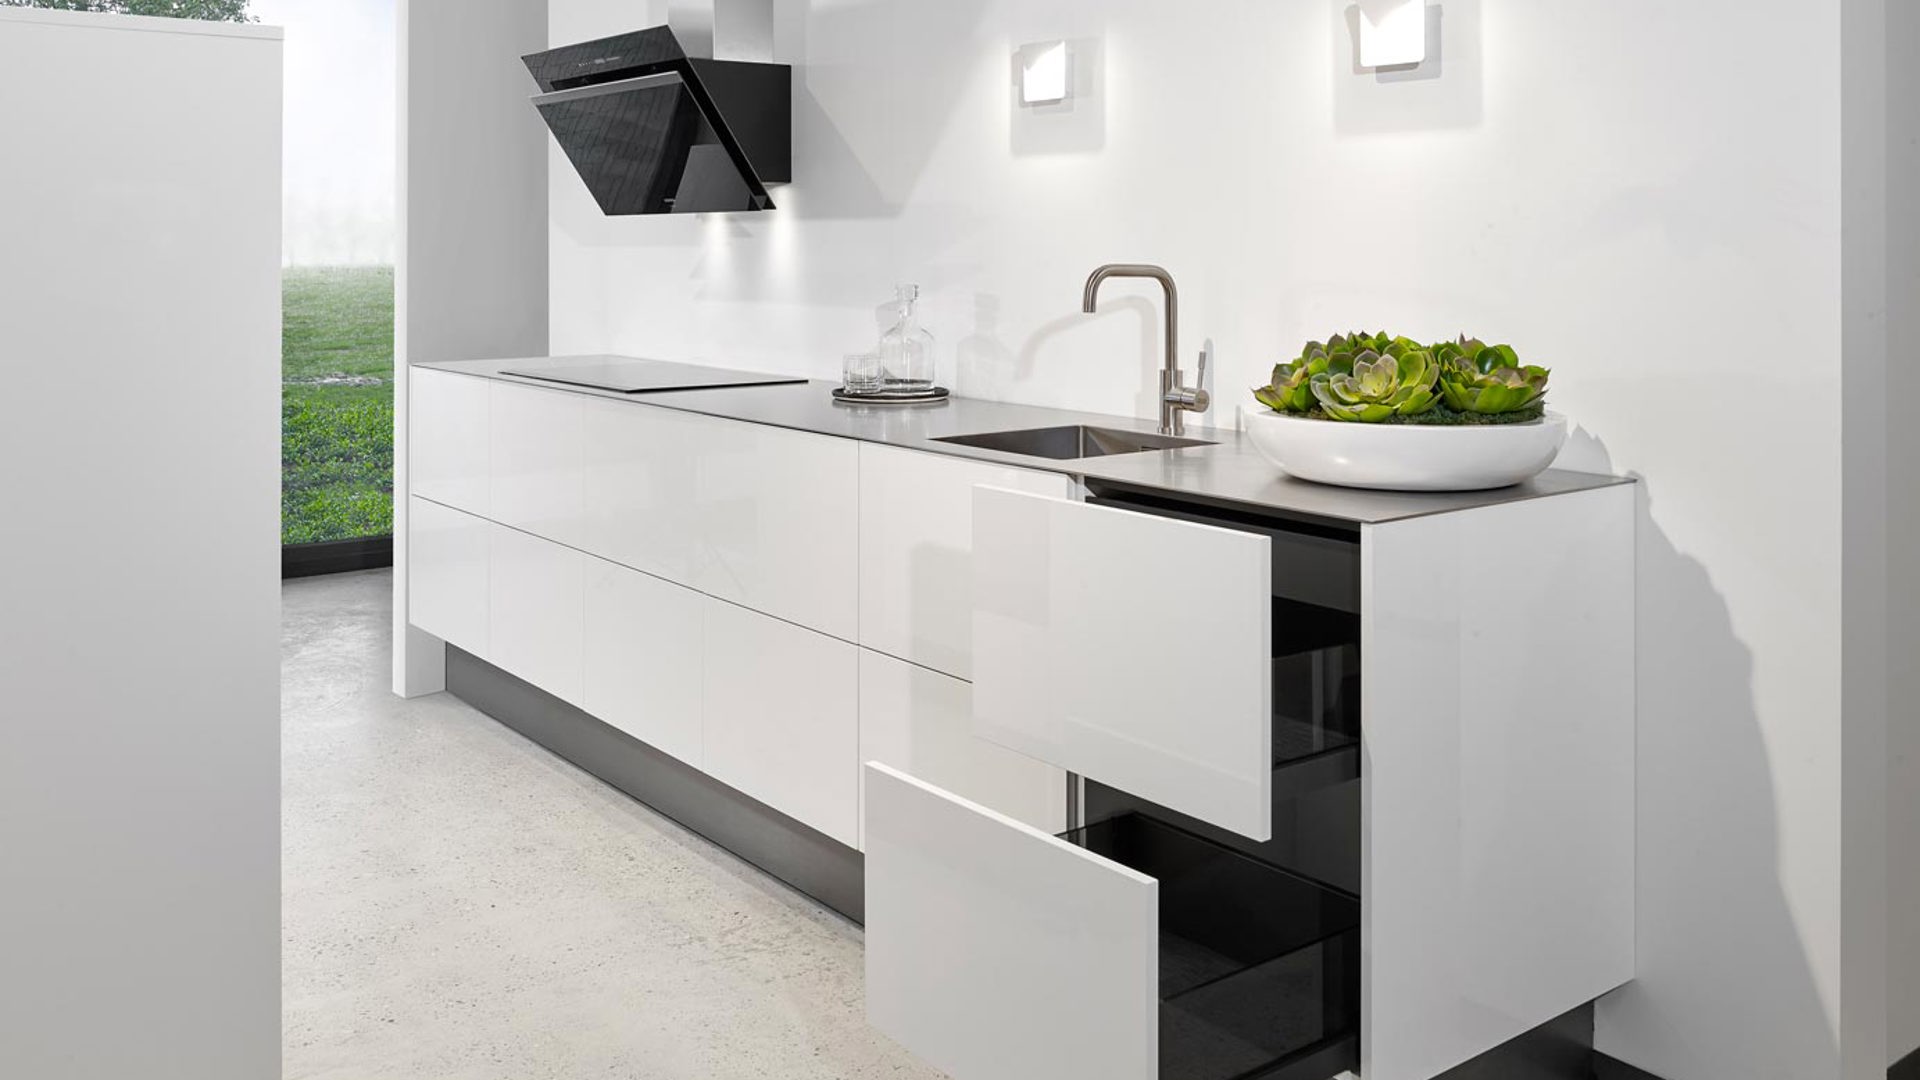 Strakke keuken modern met greeploze fronten en dun aanrechtblad